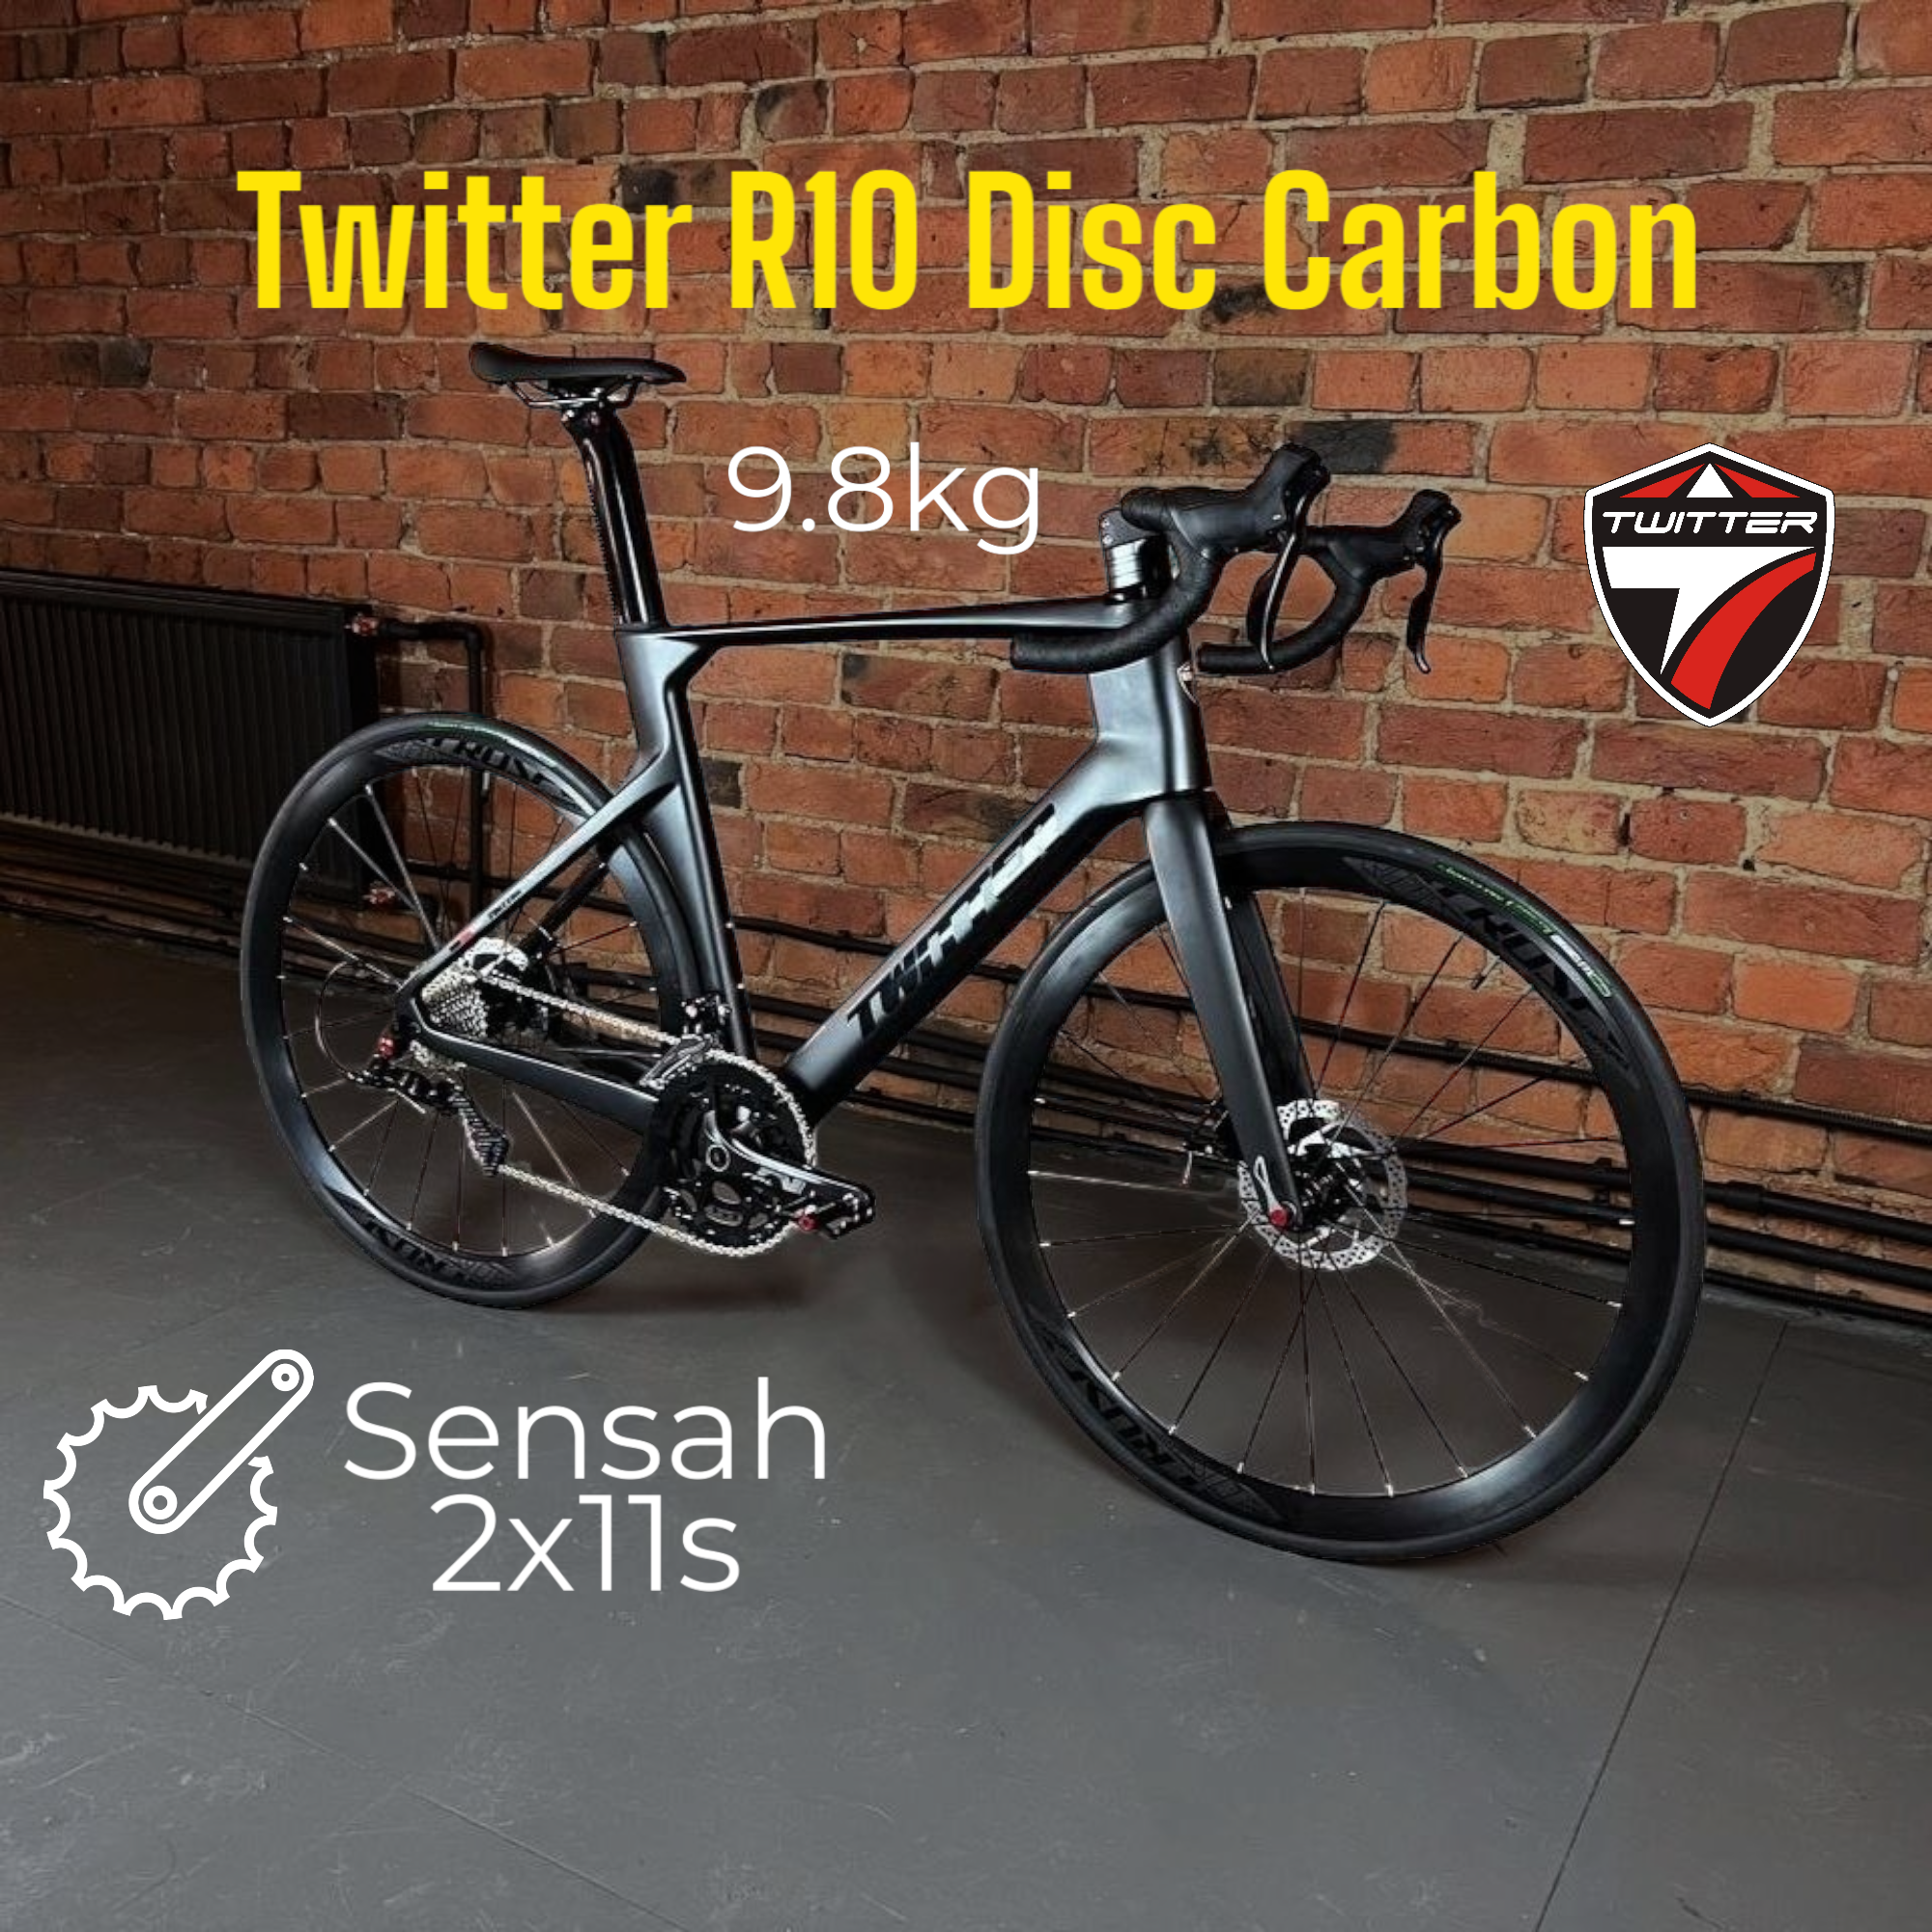 Велосипед Twitter R10 Carbon, 9.8 kg, 700х25с шоссейный взрослый, 50 см 22 скорости, цвет черный